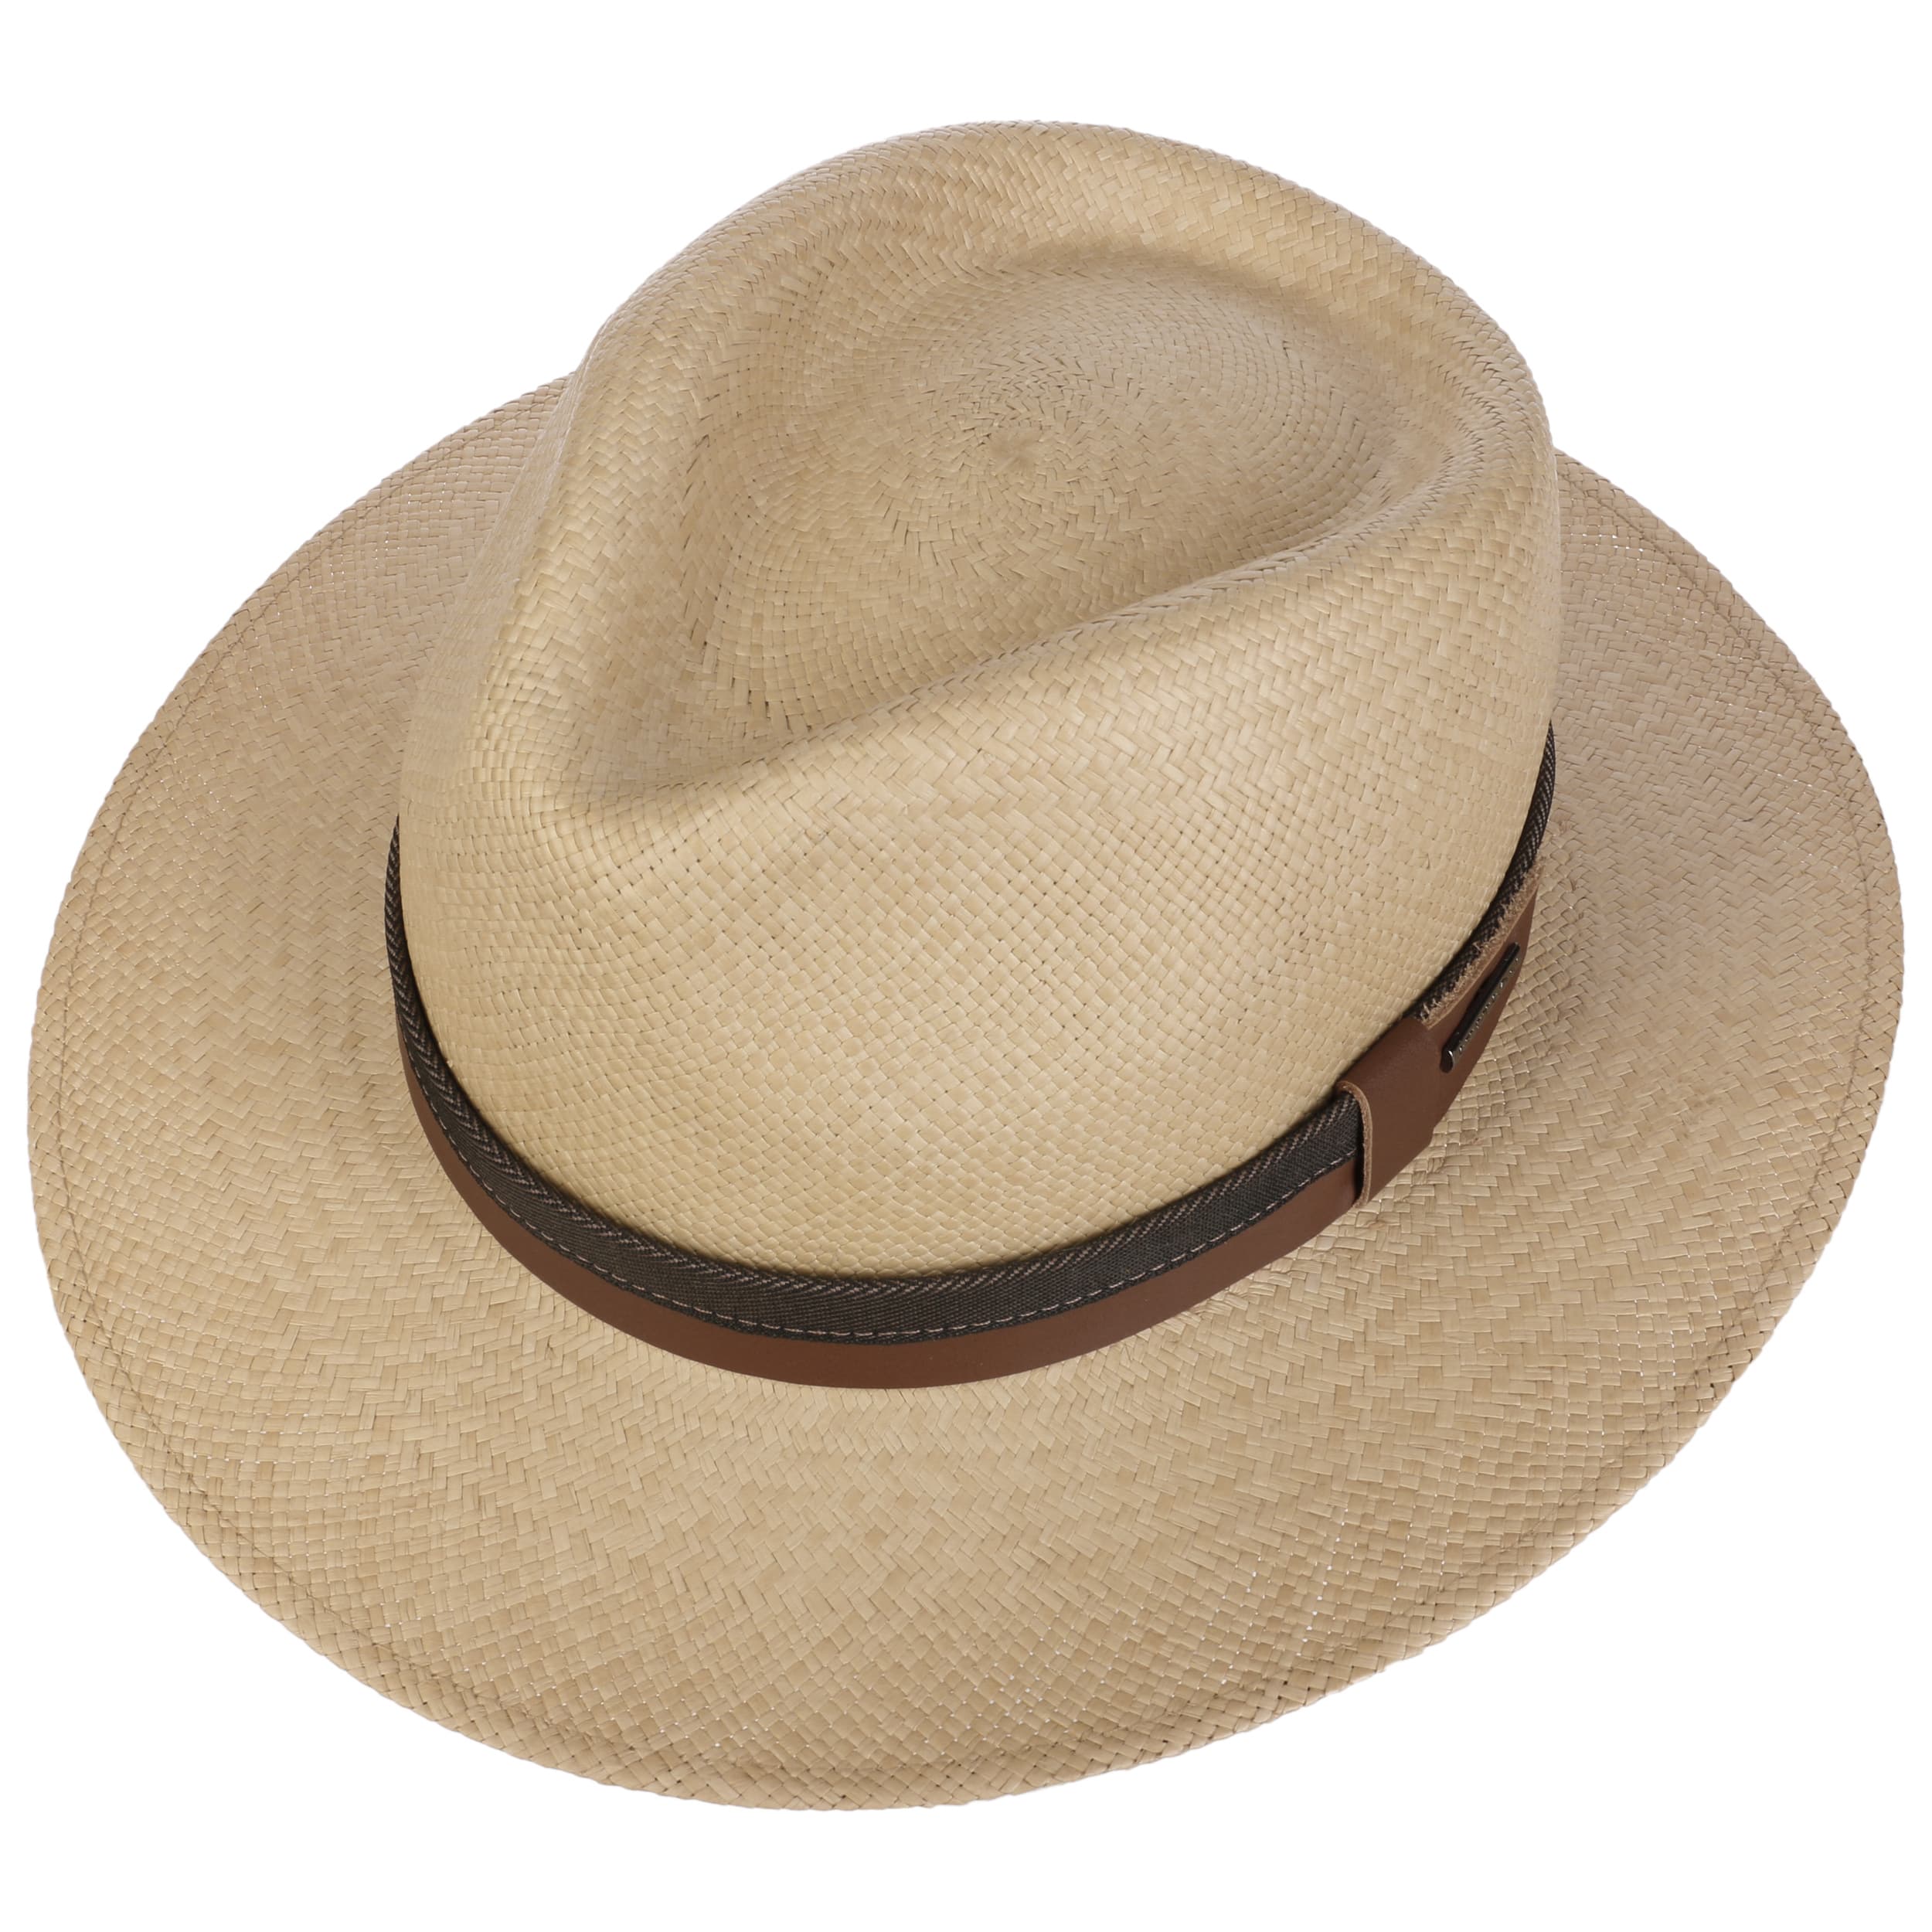 STETSONSTETSON Chapeau Panama Silco Traveller Homme Made in Ecuador de Soleil d'été en Paille avec Ruban Gros Grain Marque  Grain Printemps-été 